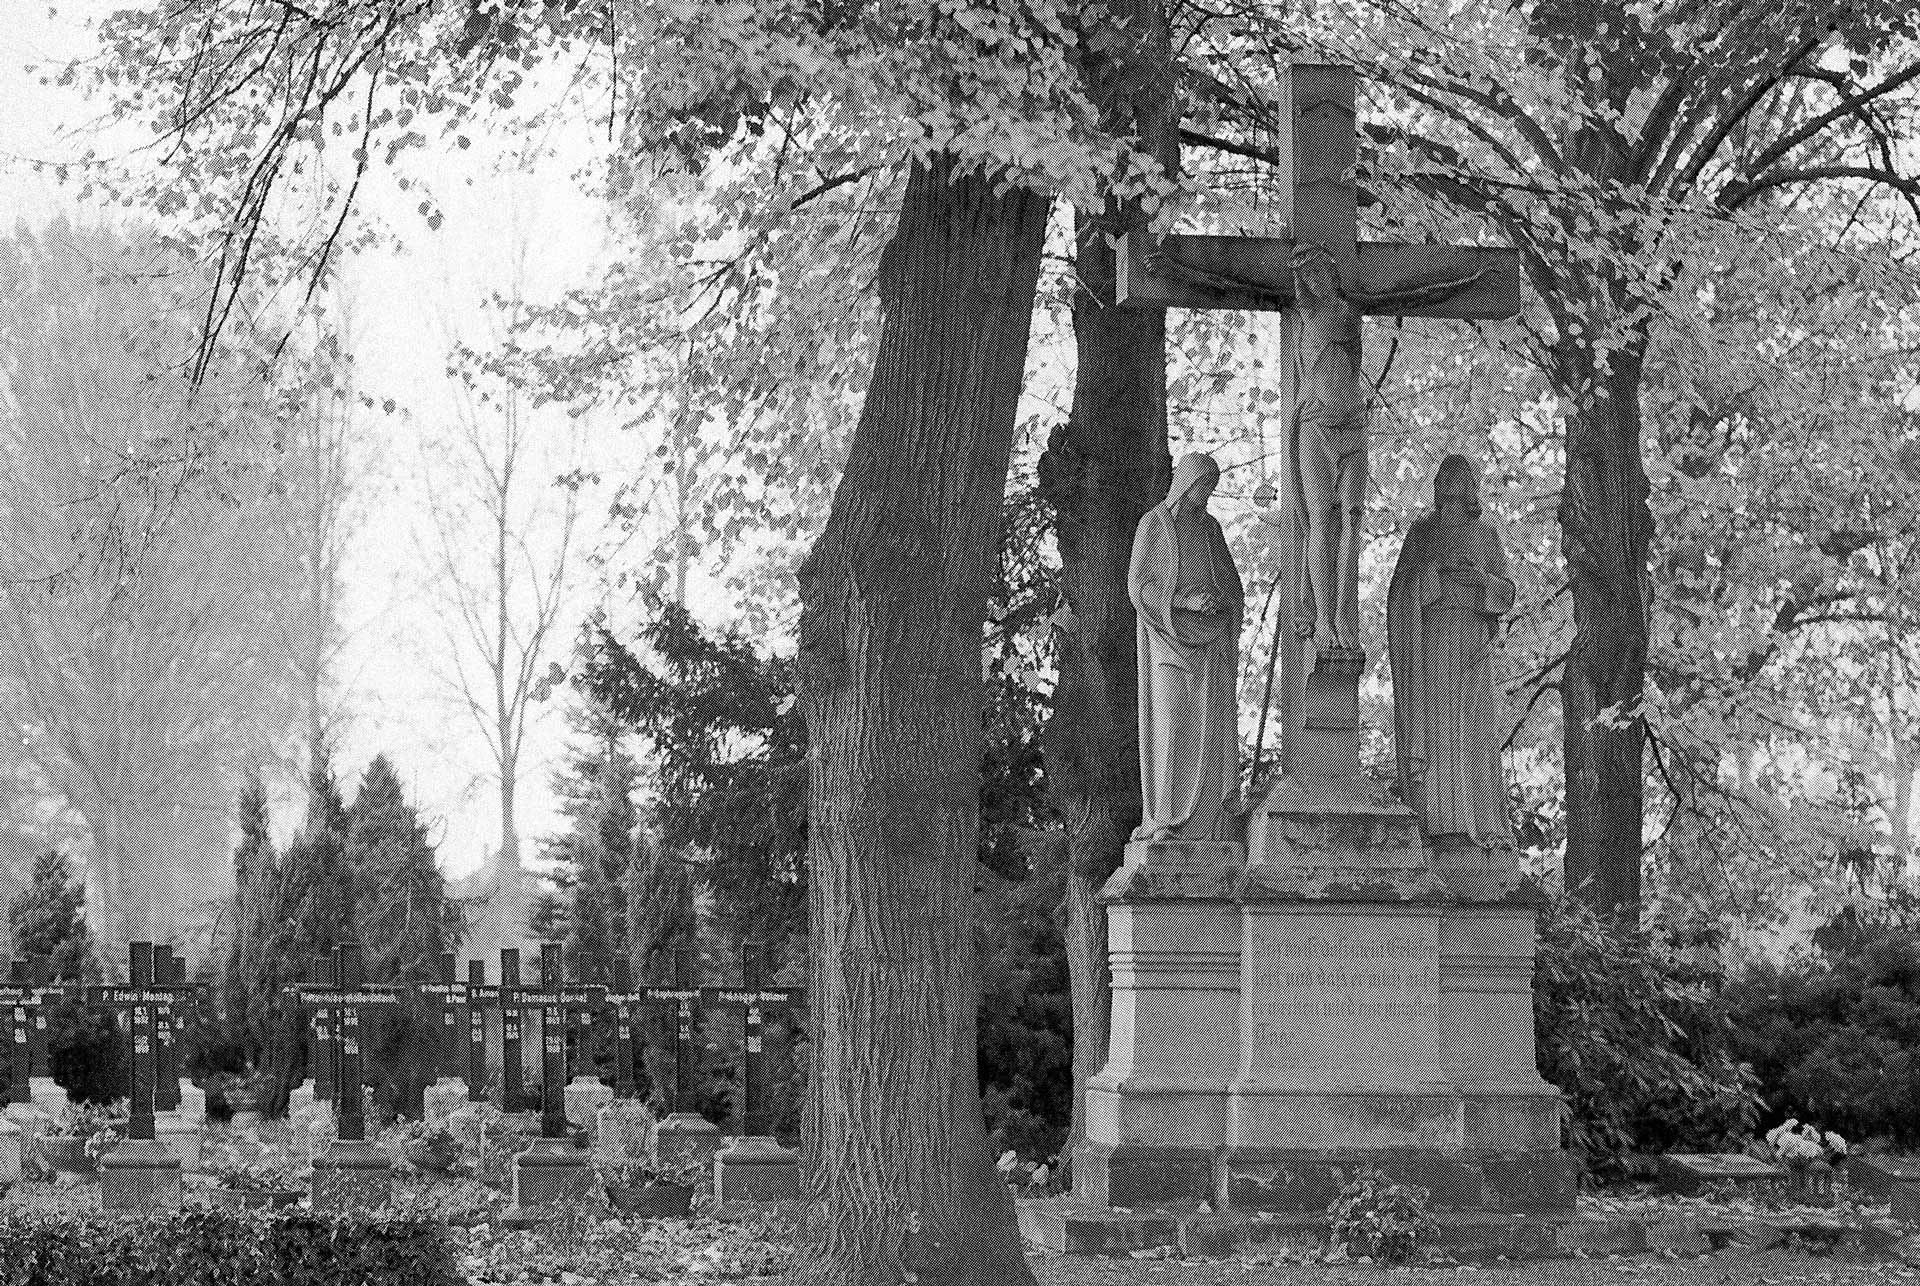 Grabstätte der Franziskaner bis zur Neugestaltung 1999 – Foto Zeidler